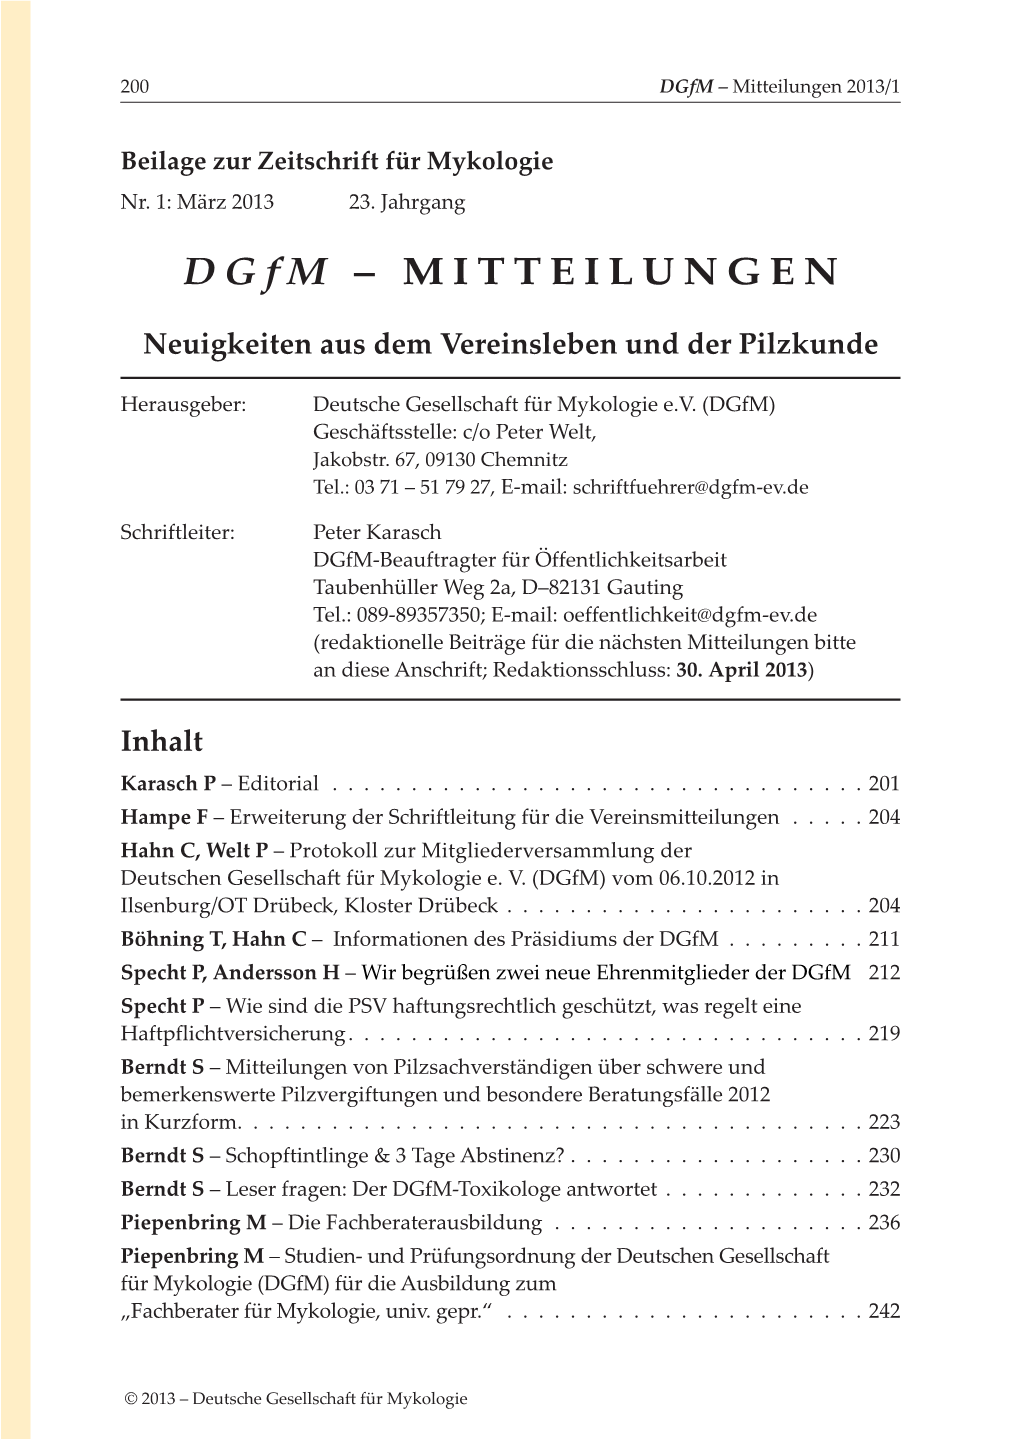 Dgfm-Mitteilungen-2013-1.Pdf 4,29 MB